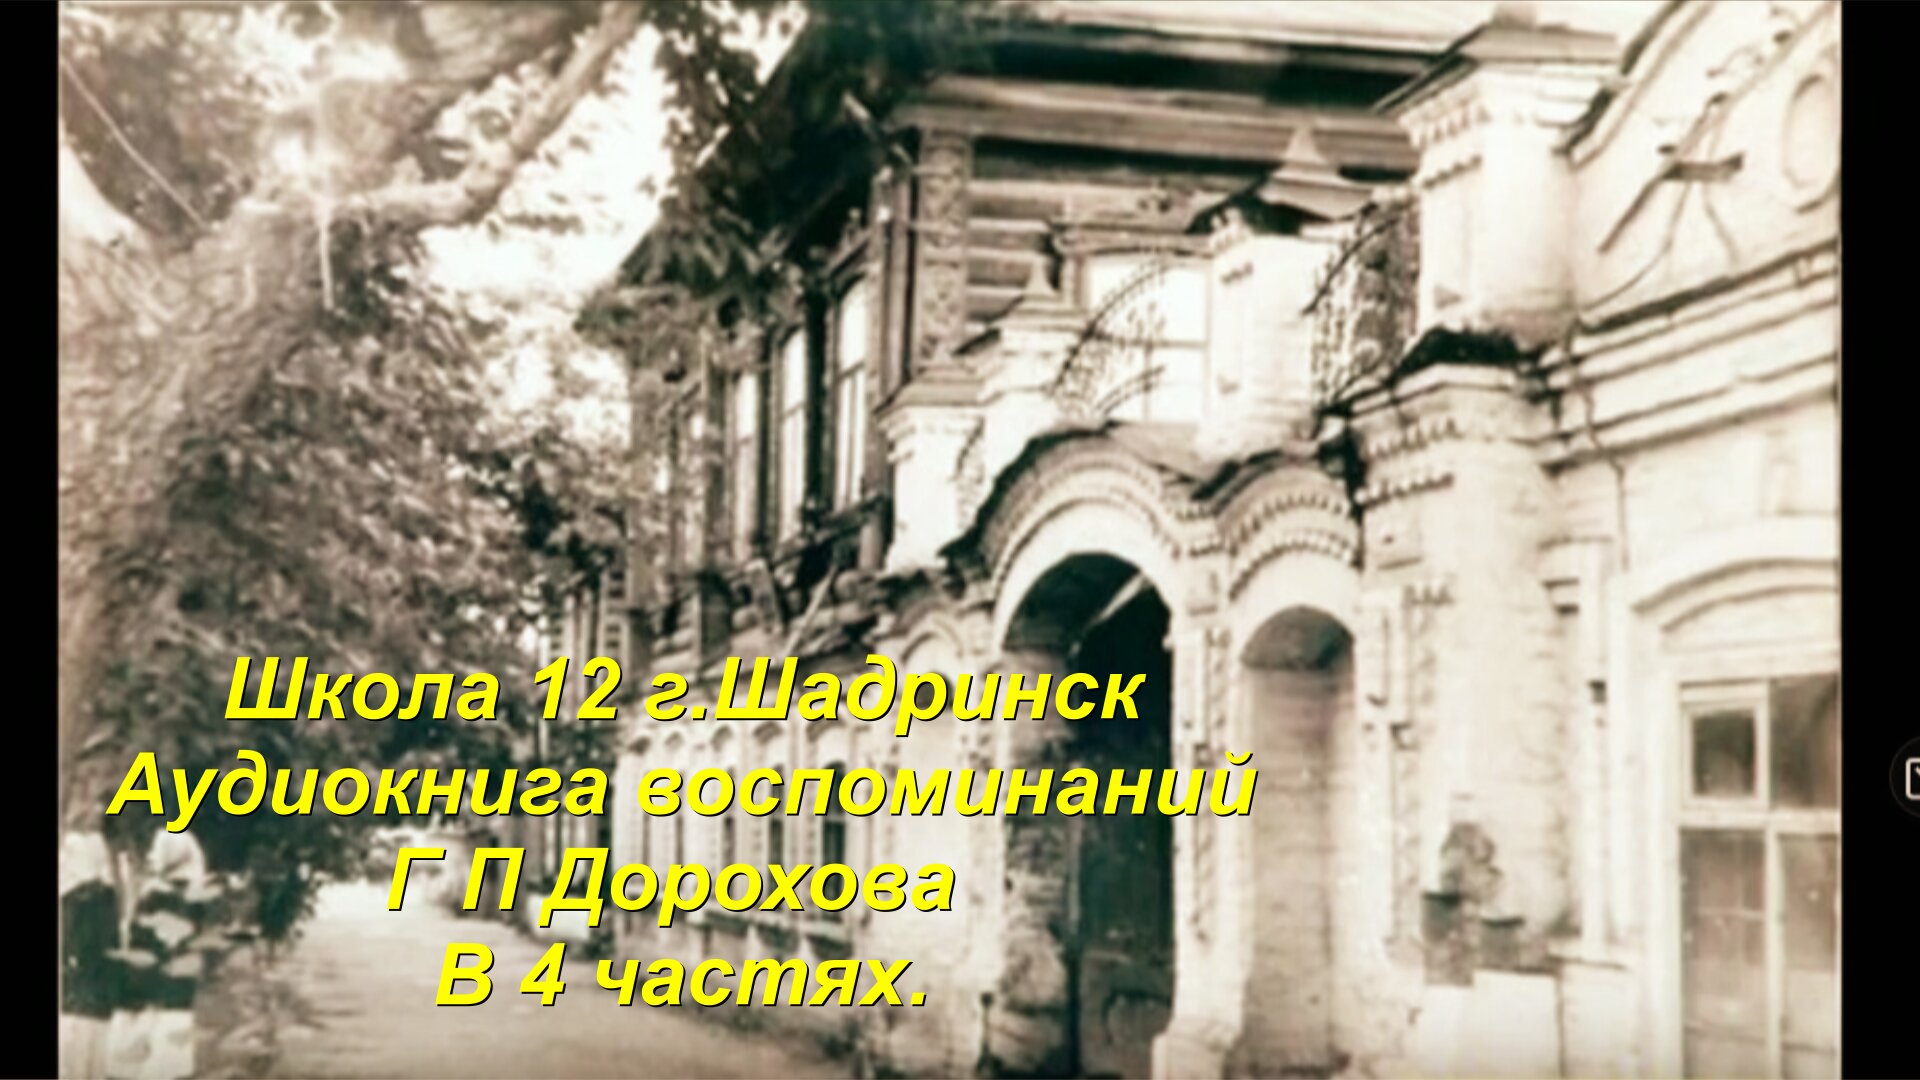 Геннвдий Прокопьевич Дорохов , золотой медалист шк-12 Шадринск  воспоминания, 1 часть. не луафАсра